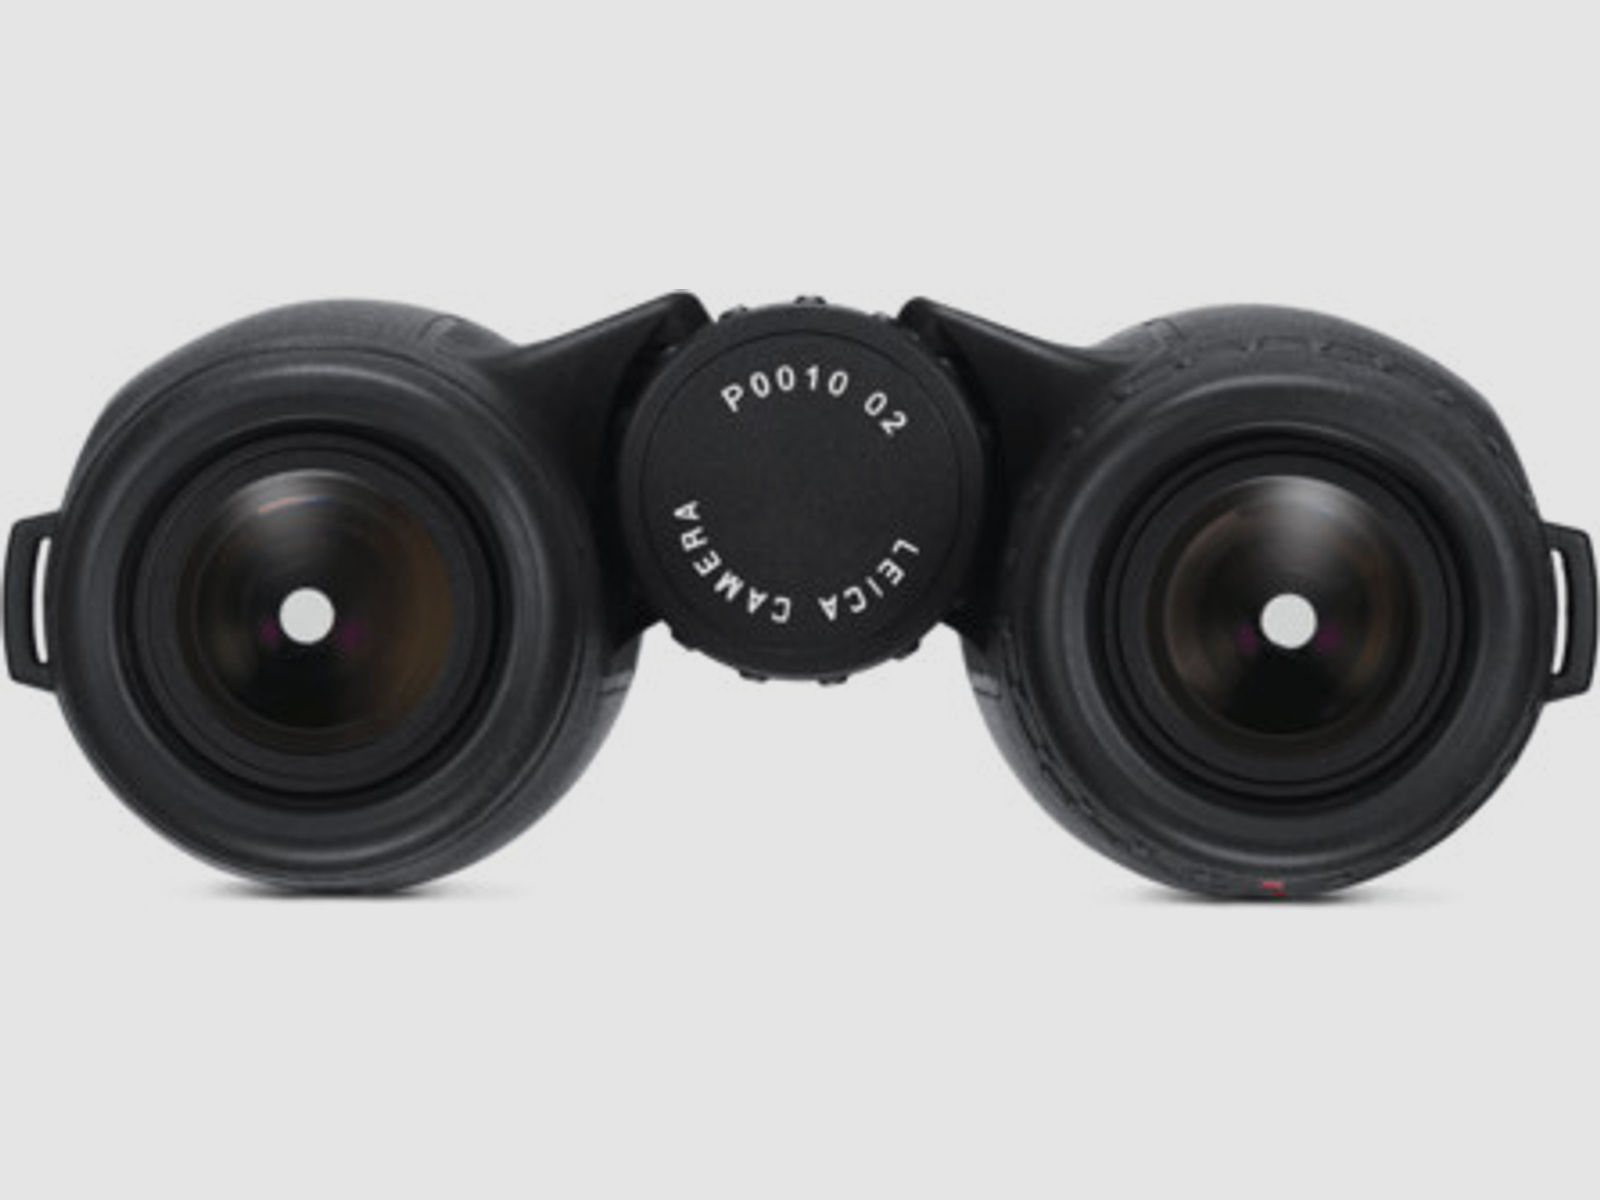 Leica TRINOVID 10x42 HD Kompaktfernglas